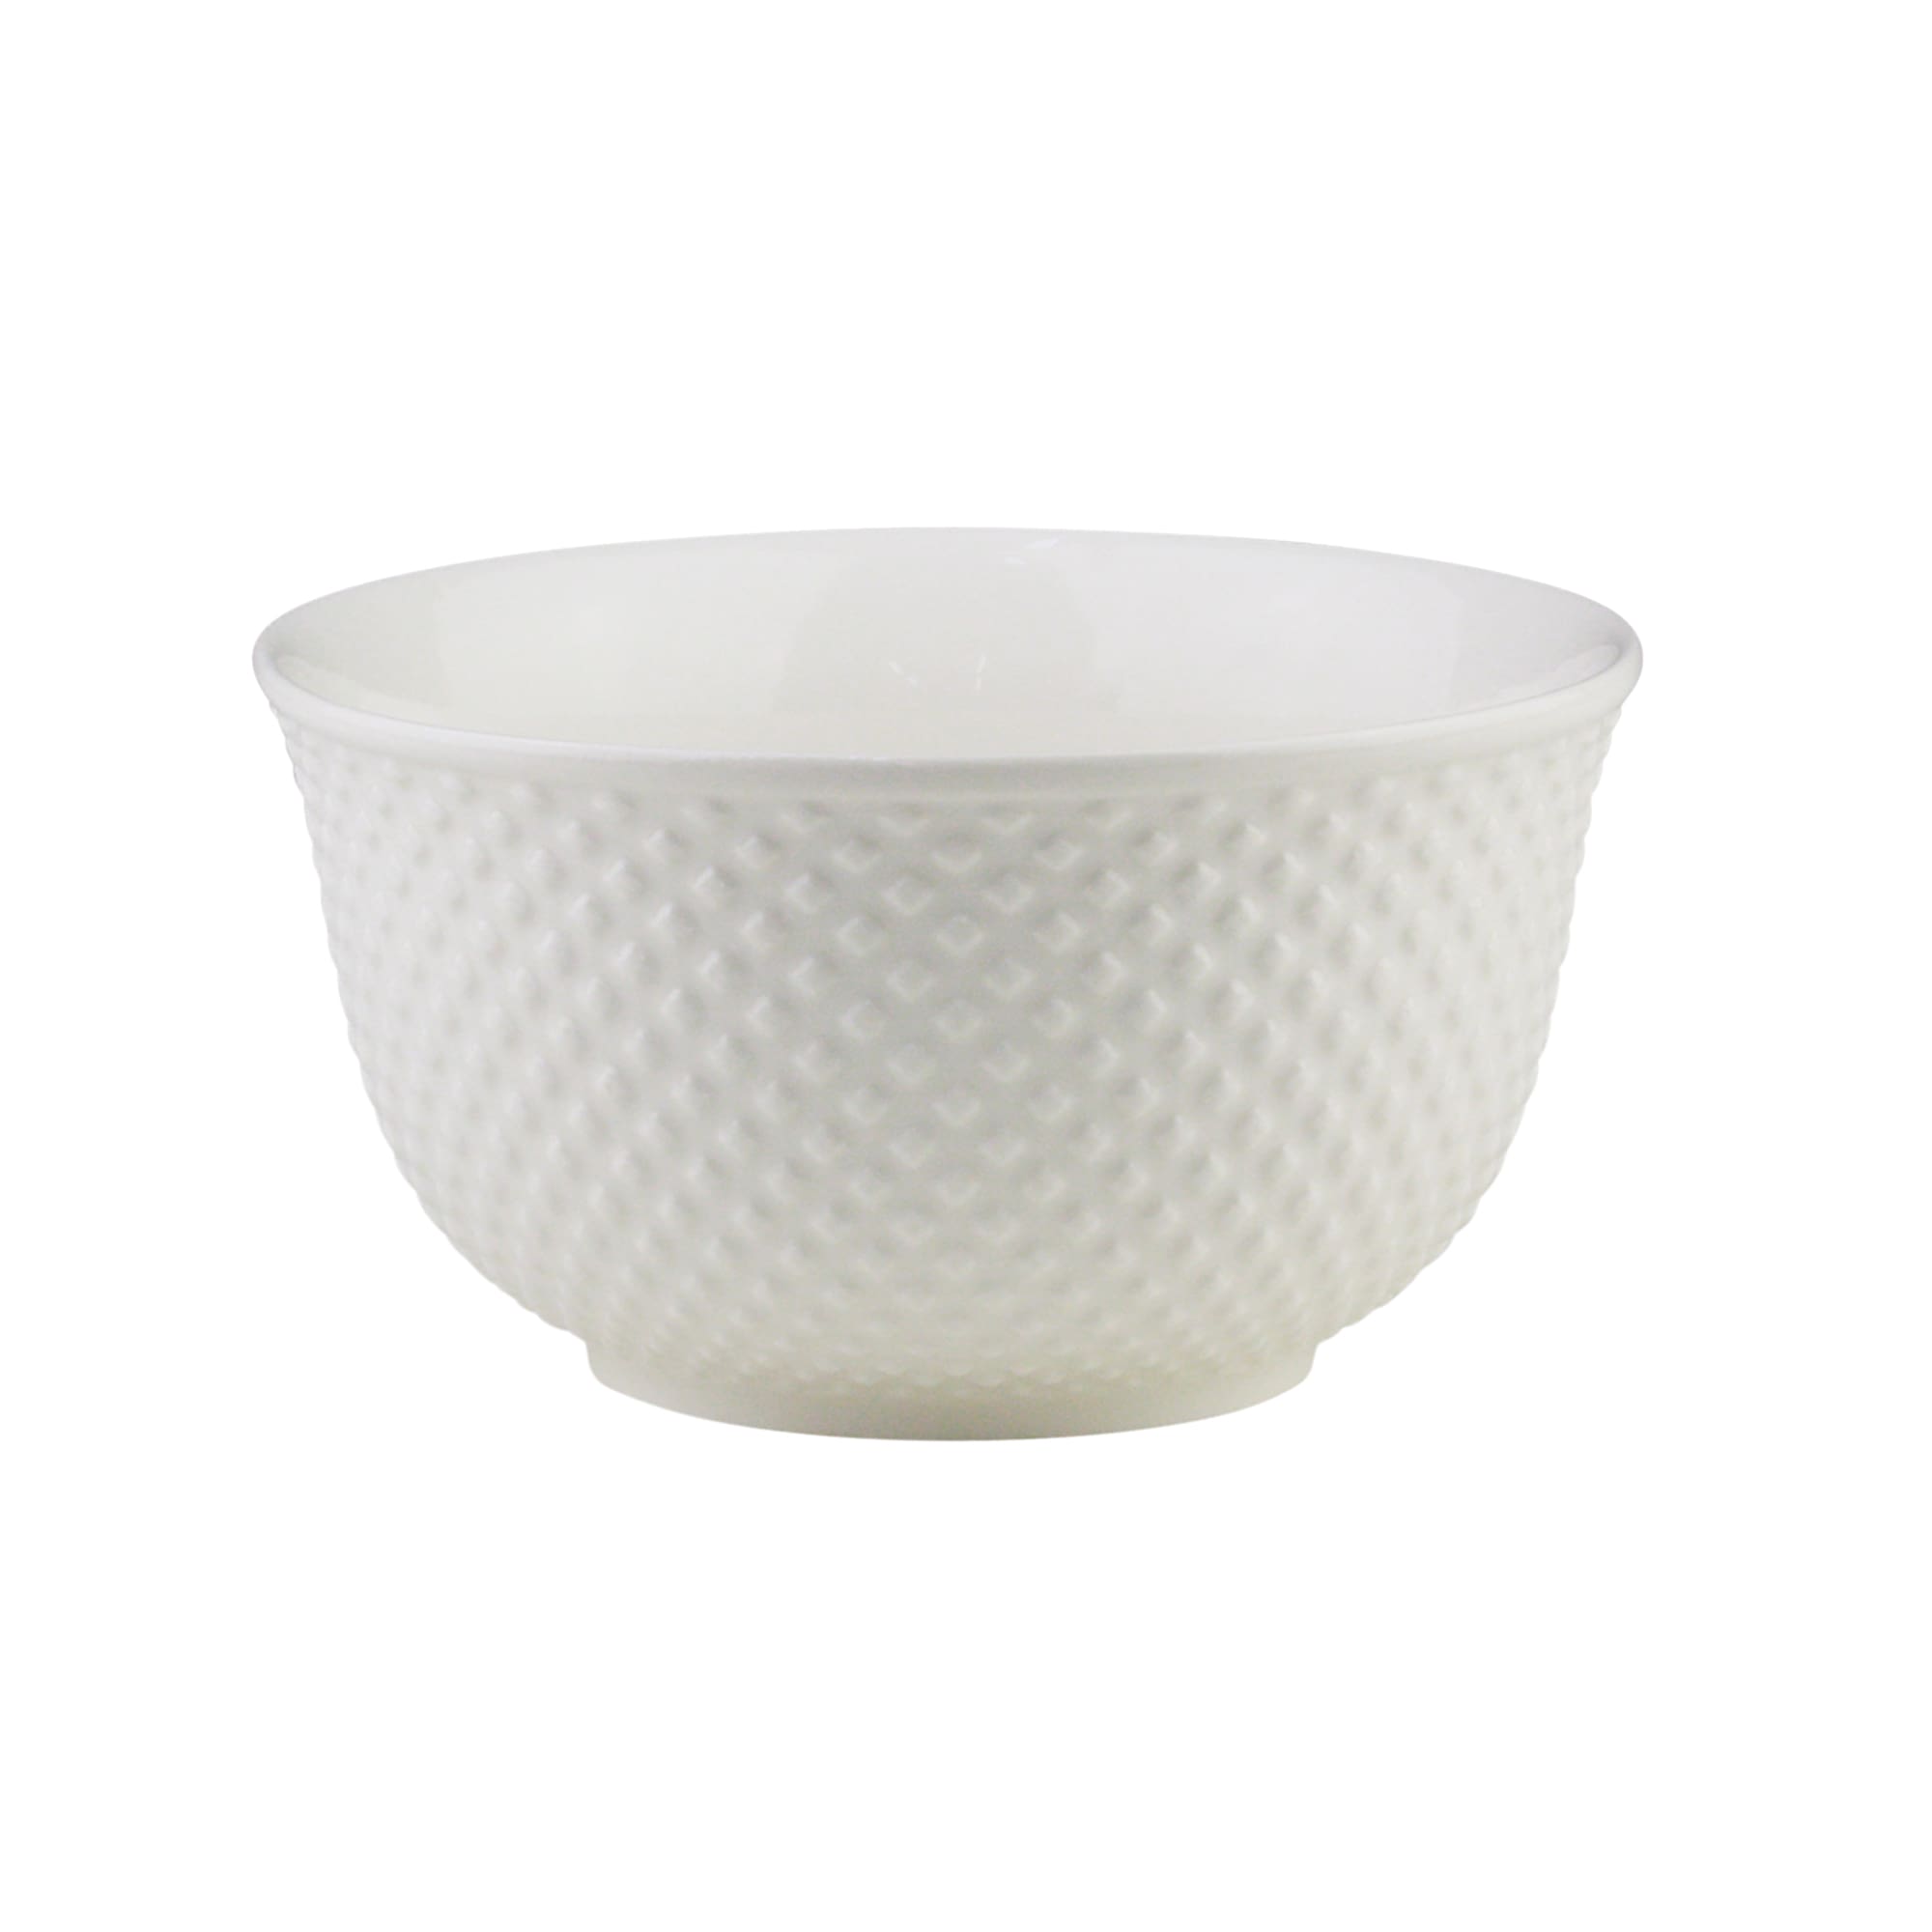 Bowl Tigela Cumbuca de Porcelana New Bone Dots Branco 12,5 x 7 cm